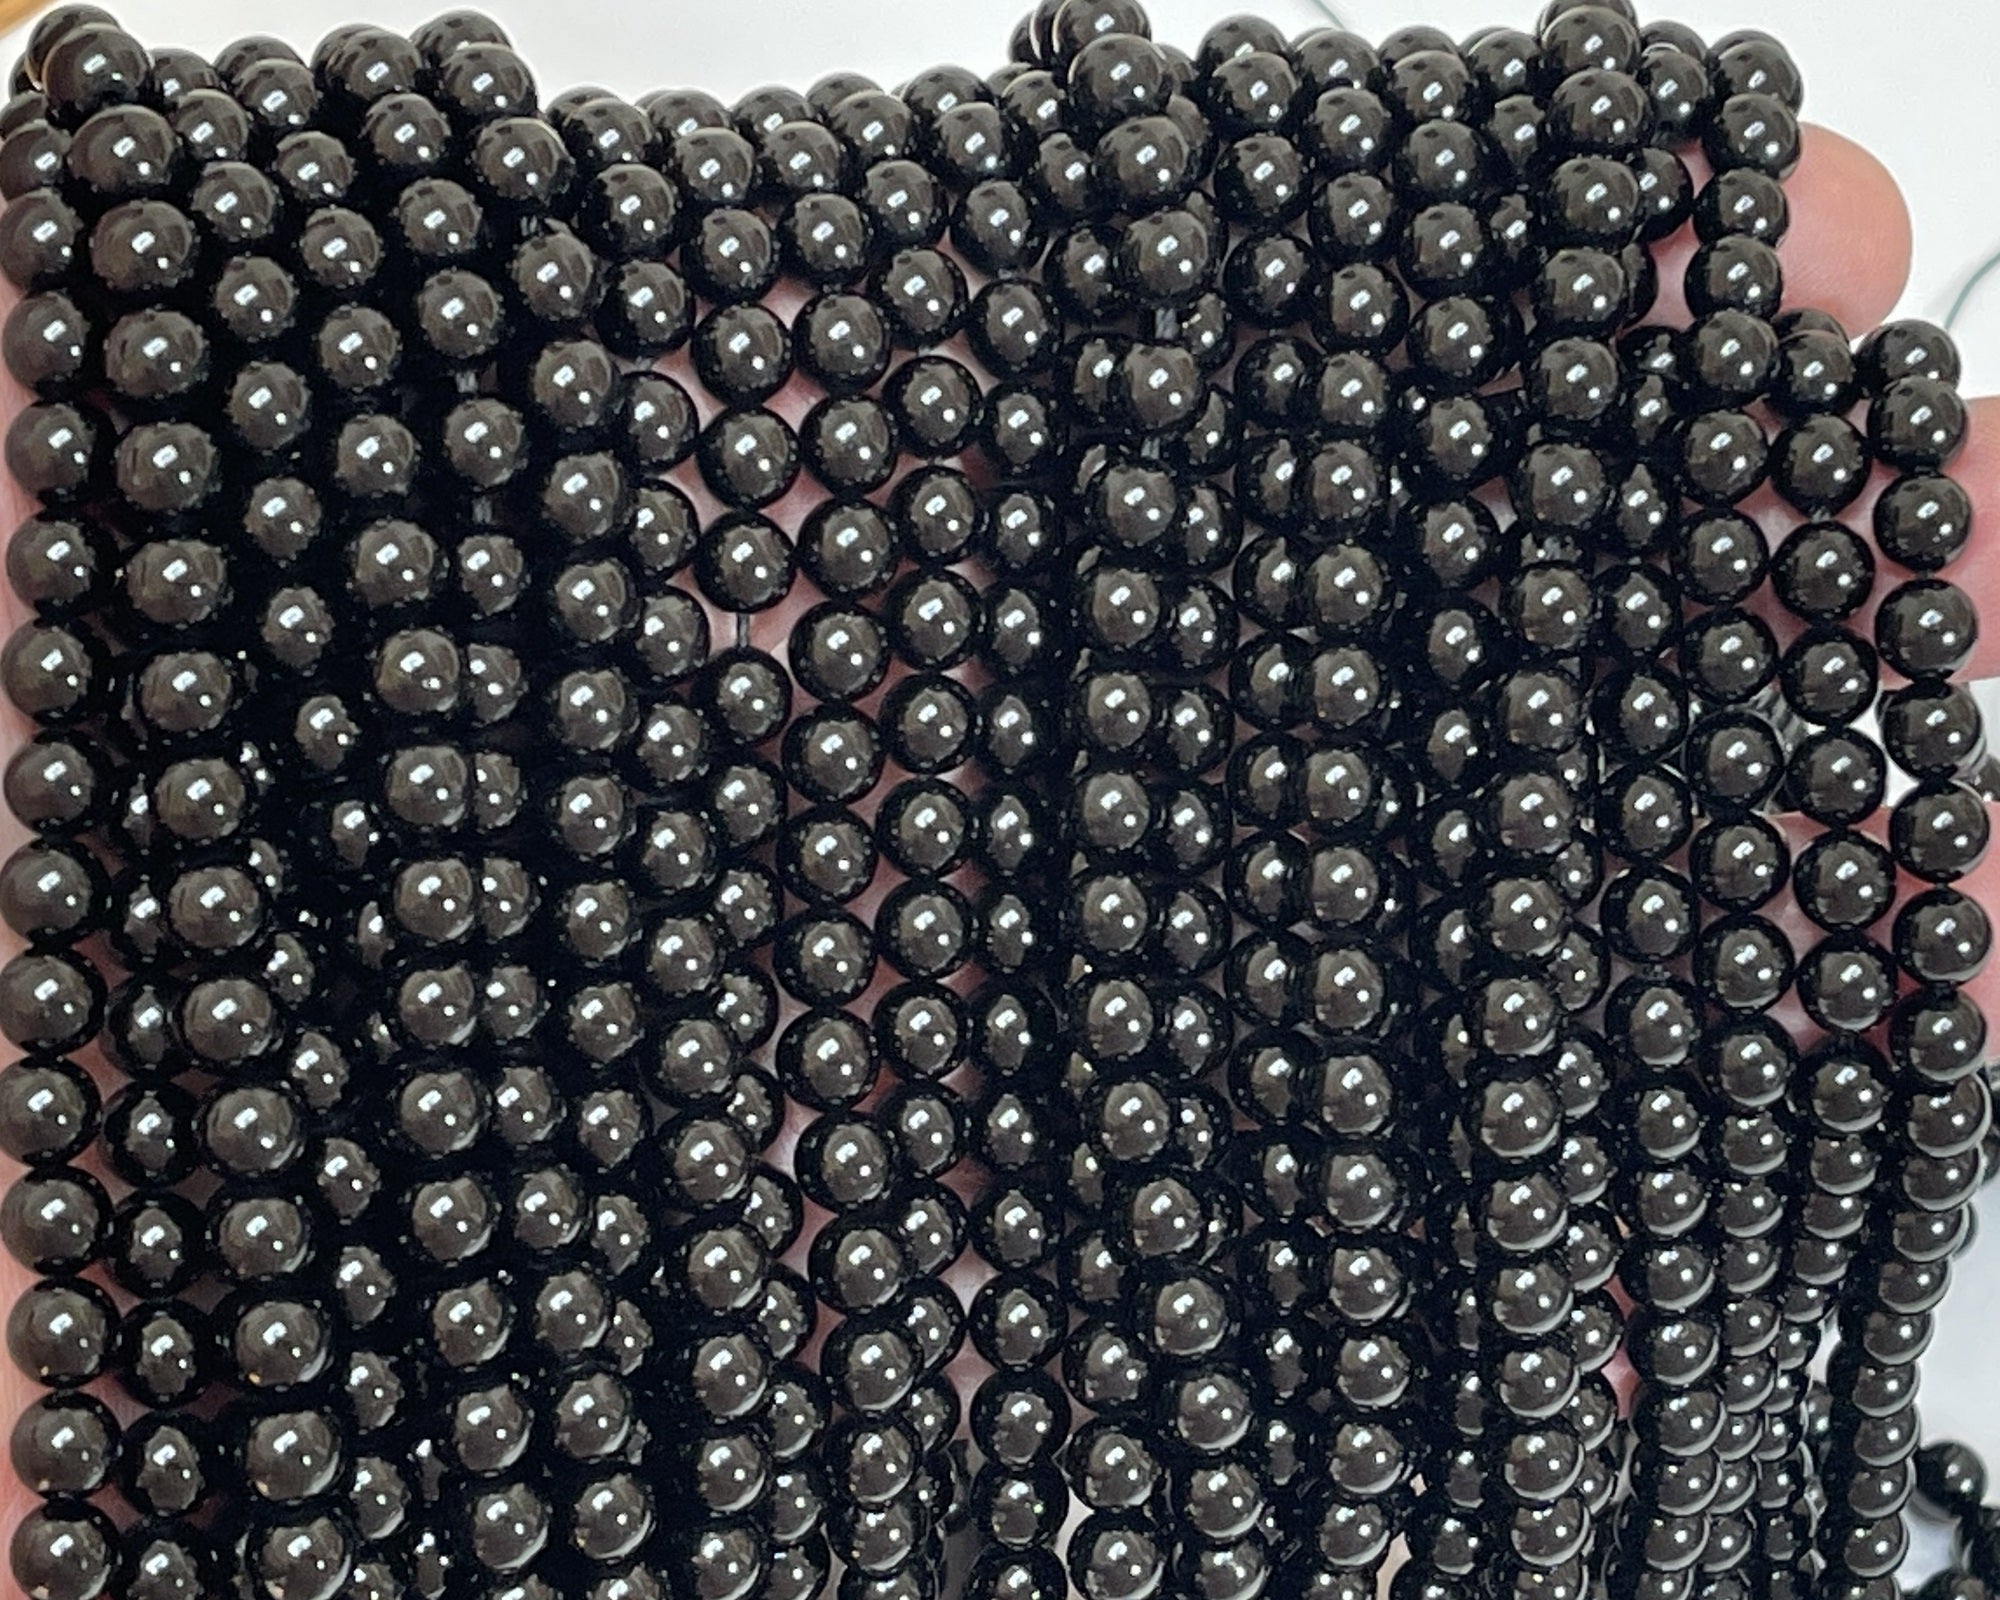 Black Tourmaline 6mm round natural gemstone beads 15.5" strand - Oz Beads 